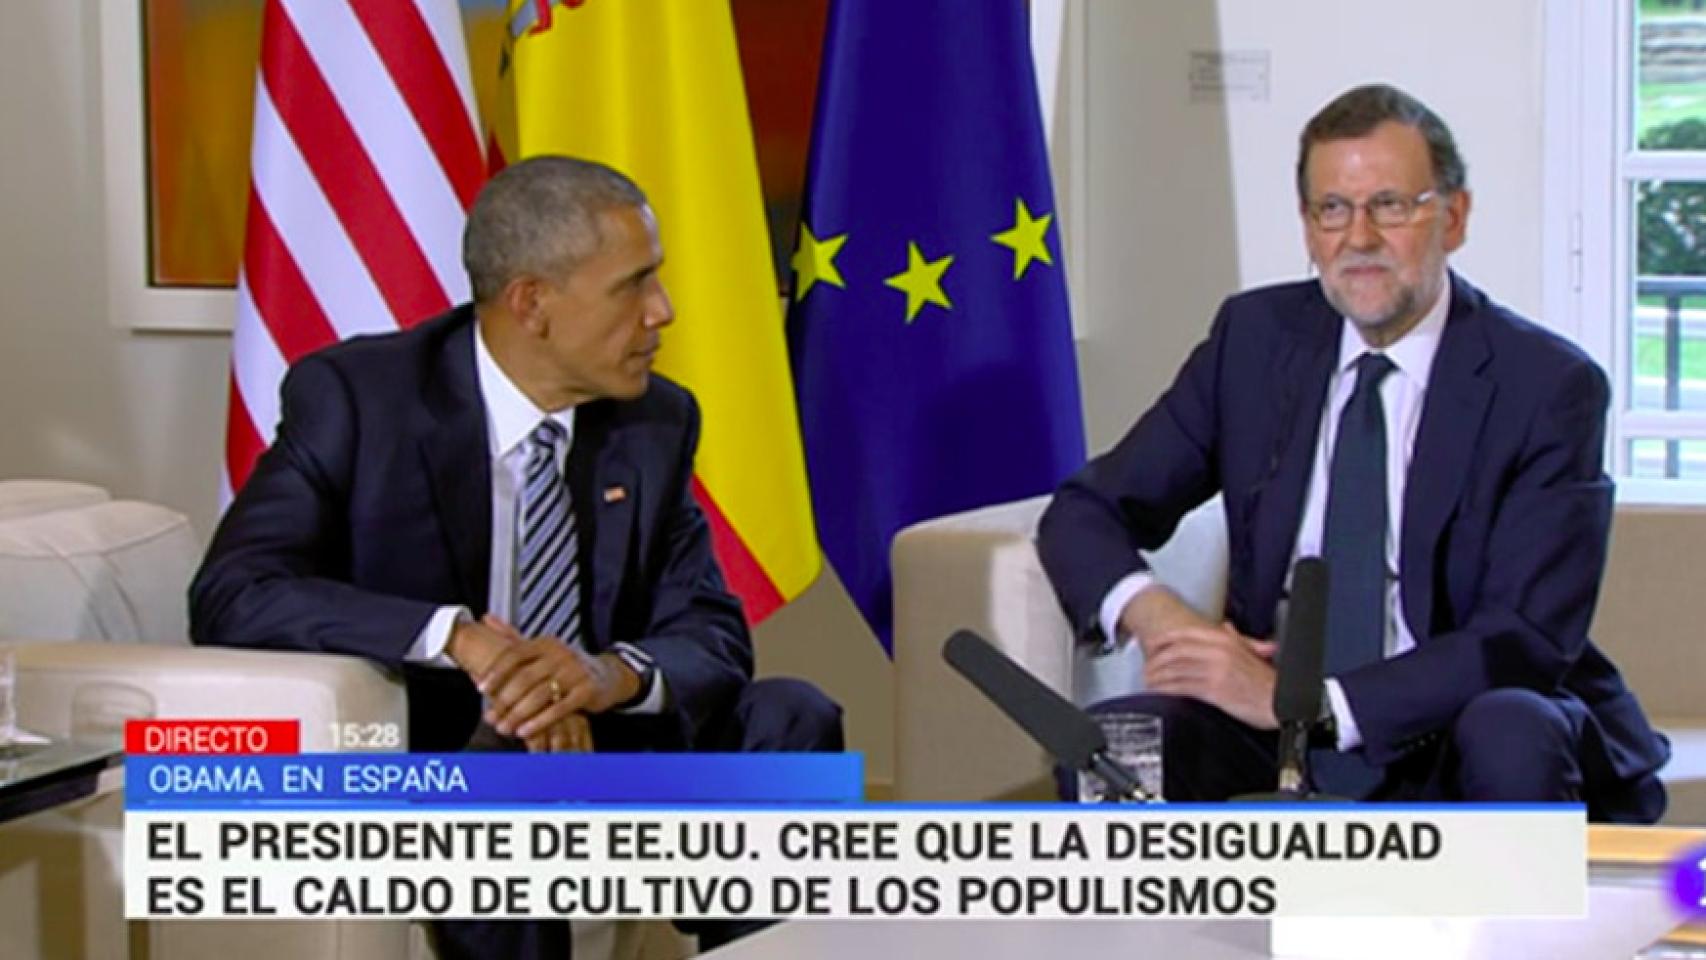 Críticas contra TVE por los rótulos pro Rajoy elegidos durante la visita de Obama